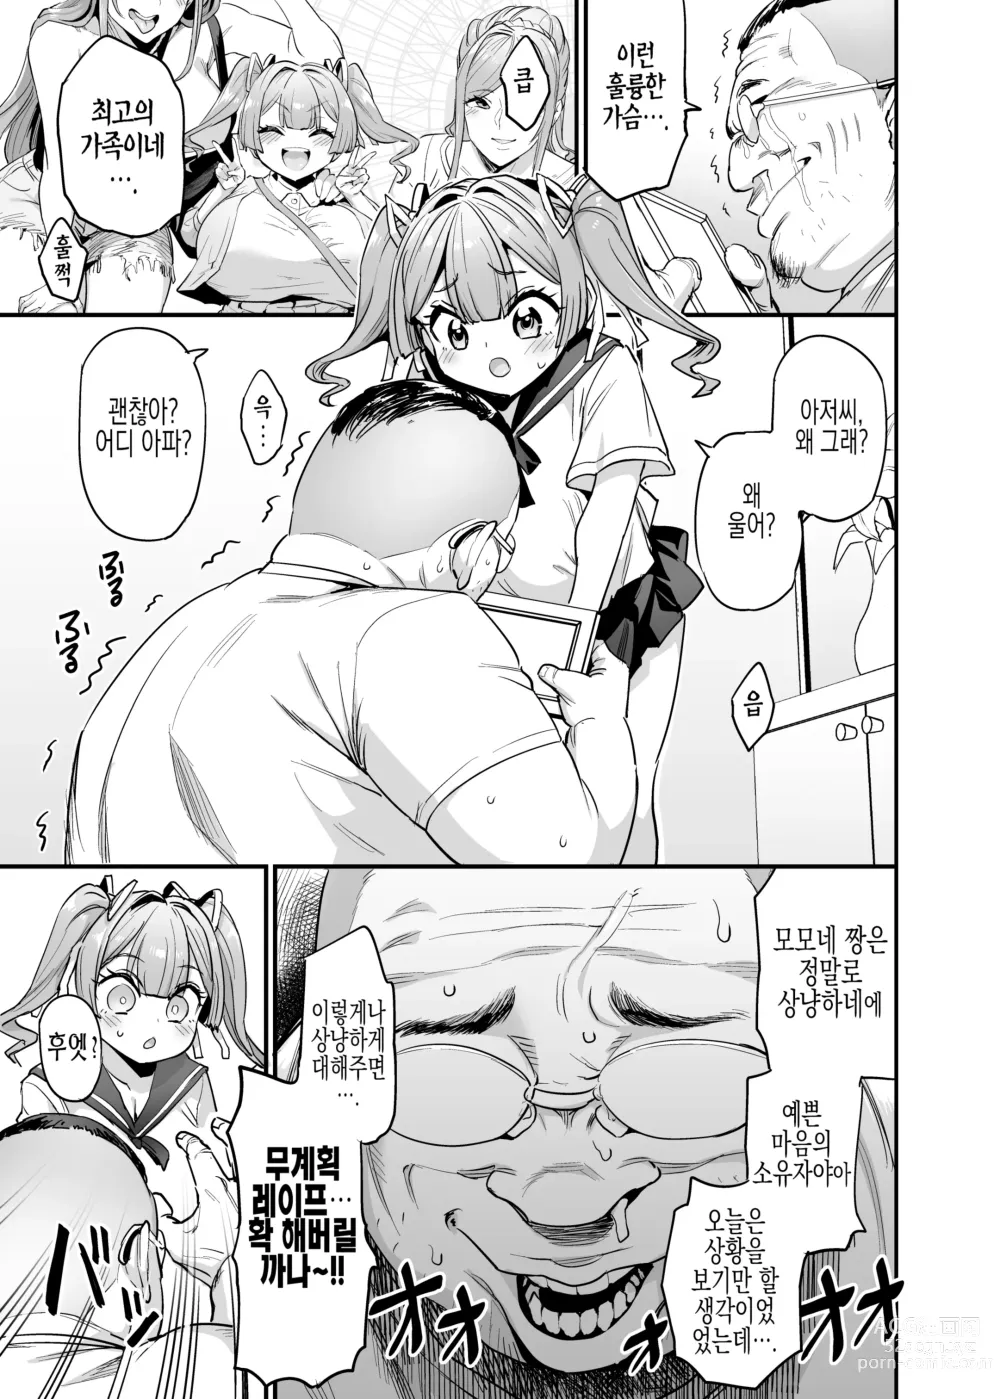 Page 9 of doujinshi 젖통 삽입 가족#2 모모네 애육